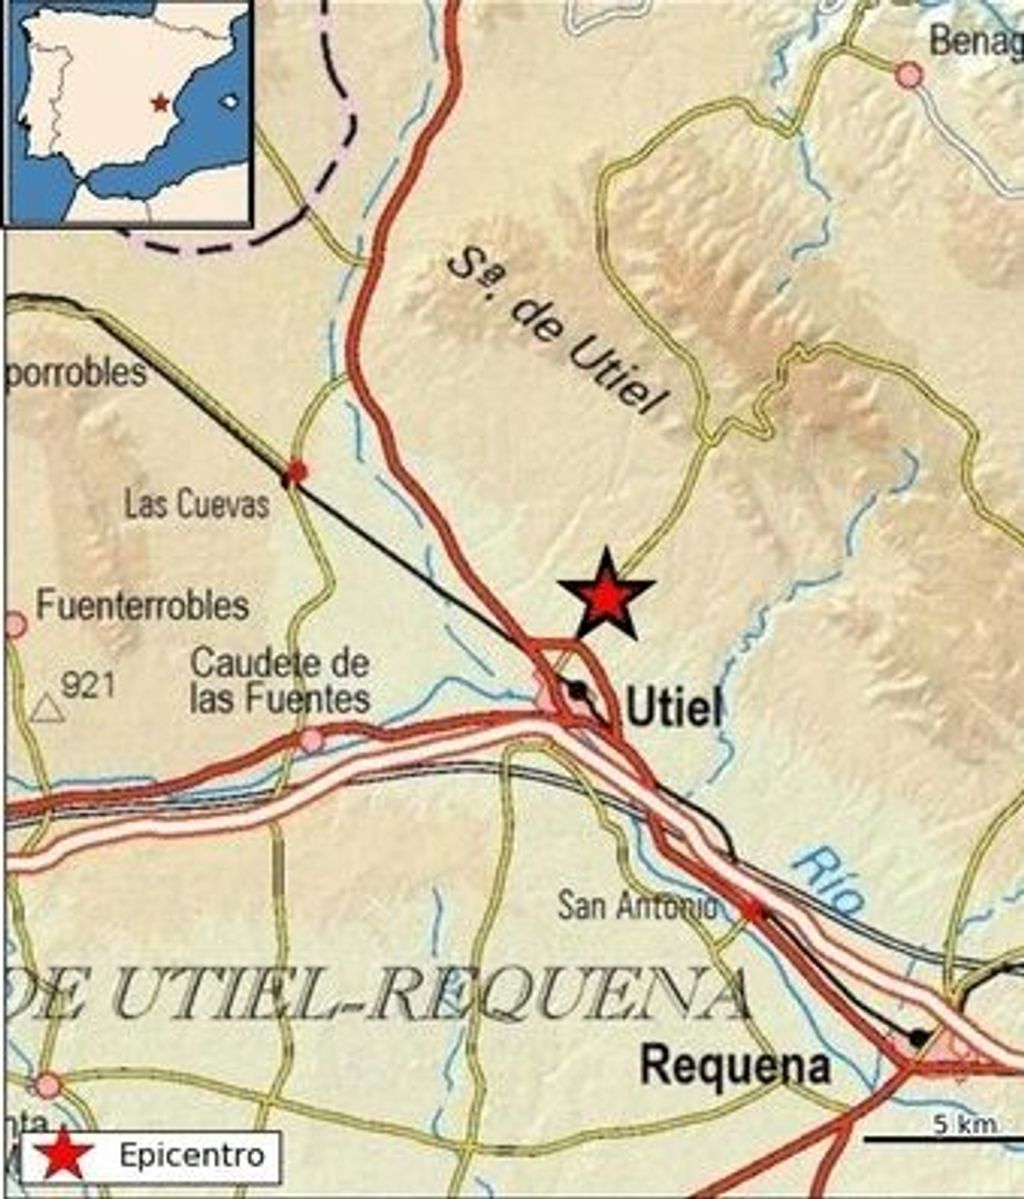 EuropaPress 4717022 registrado terremoto magnitud 36 utiel requena